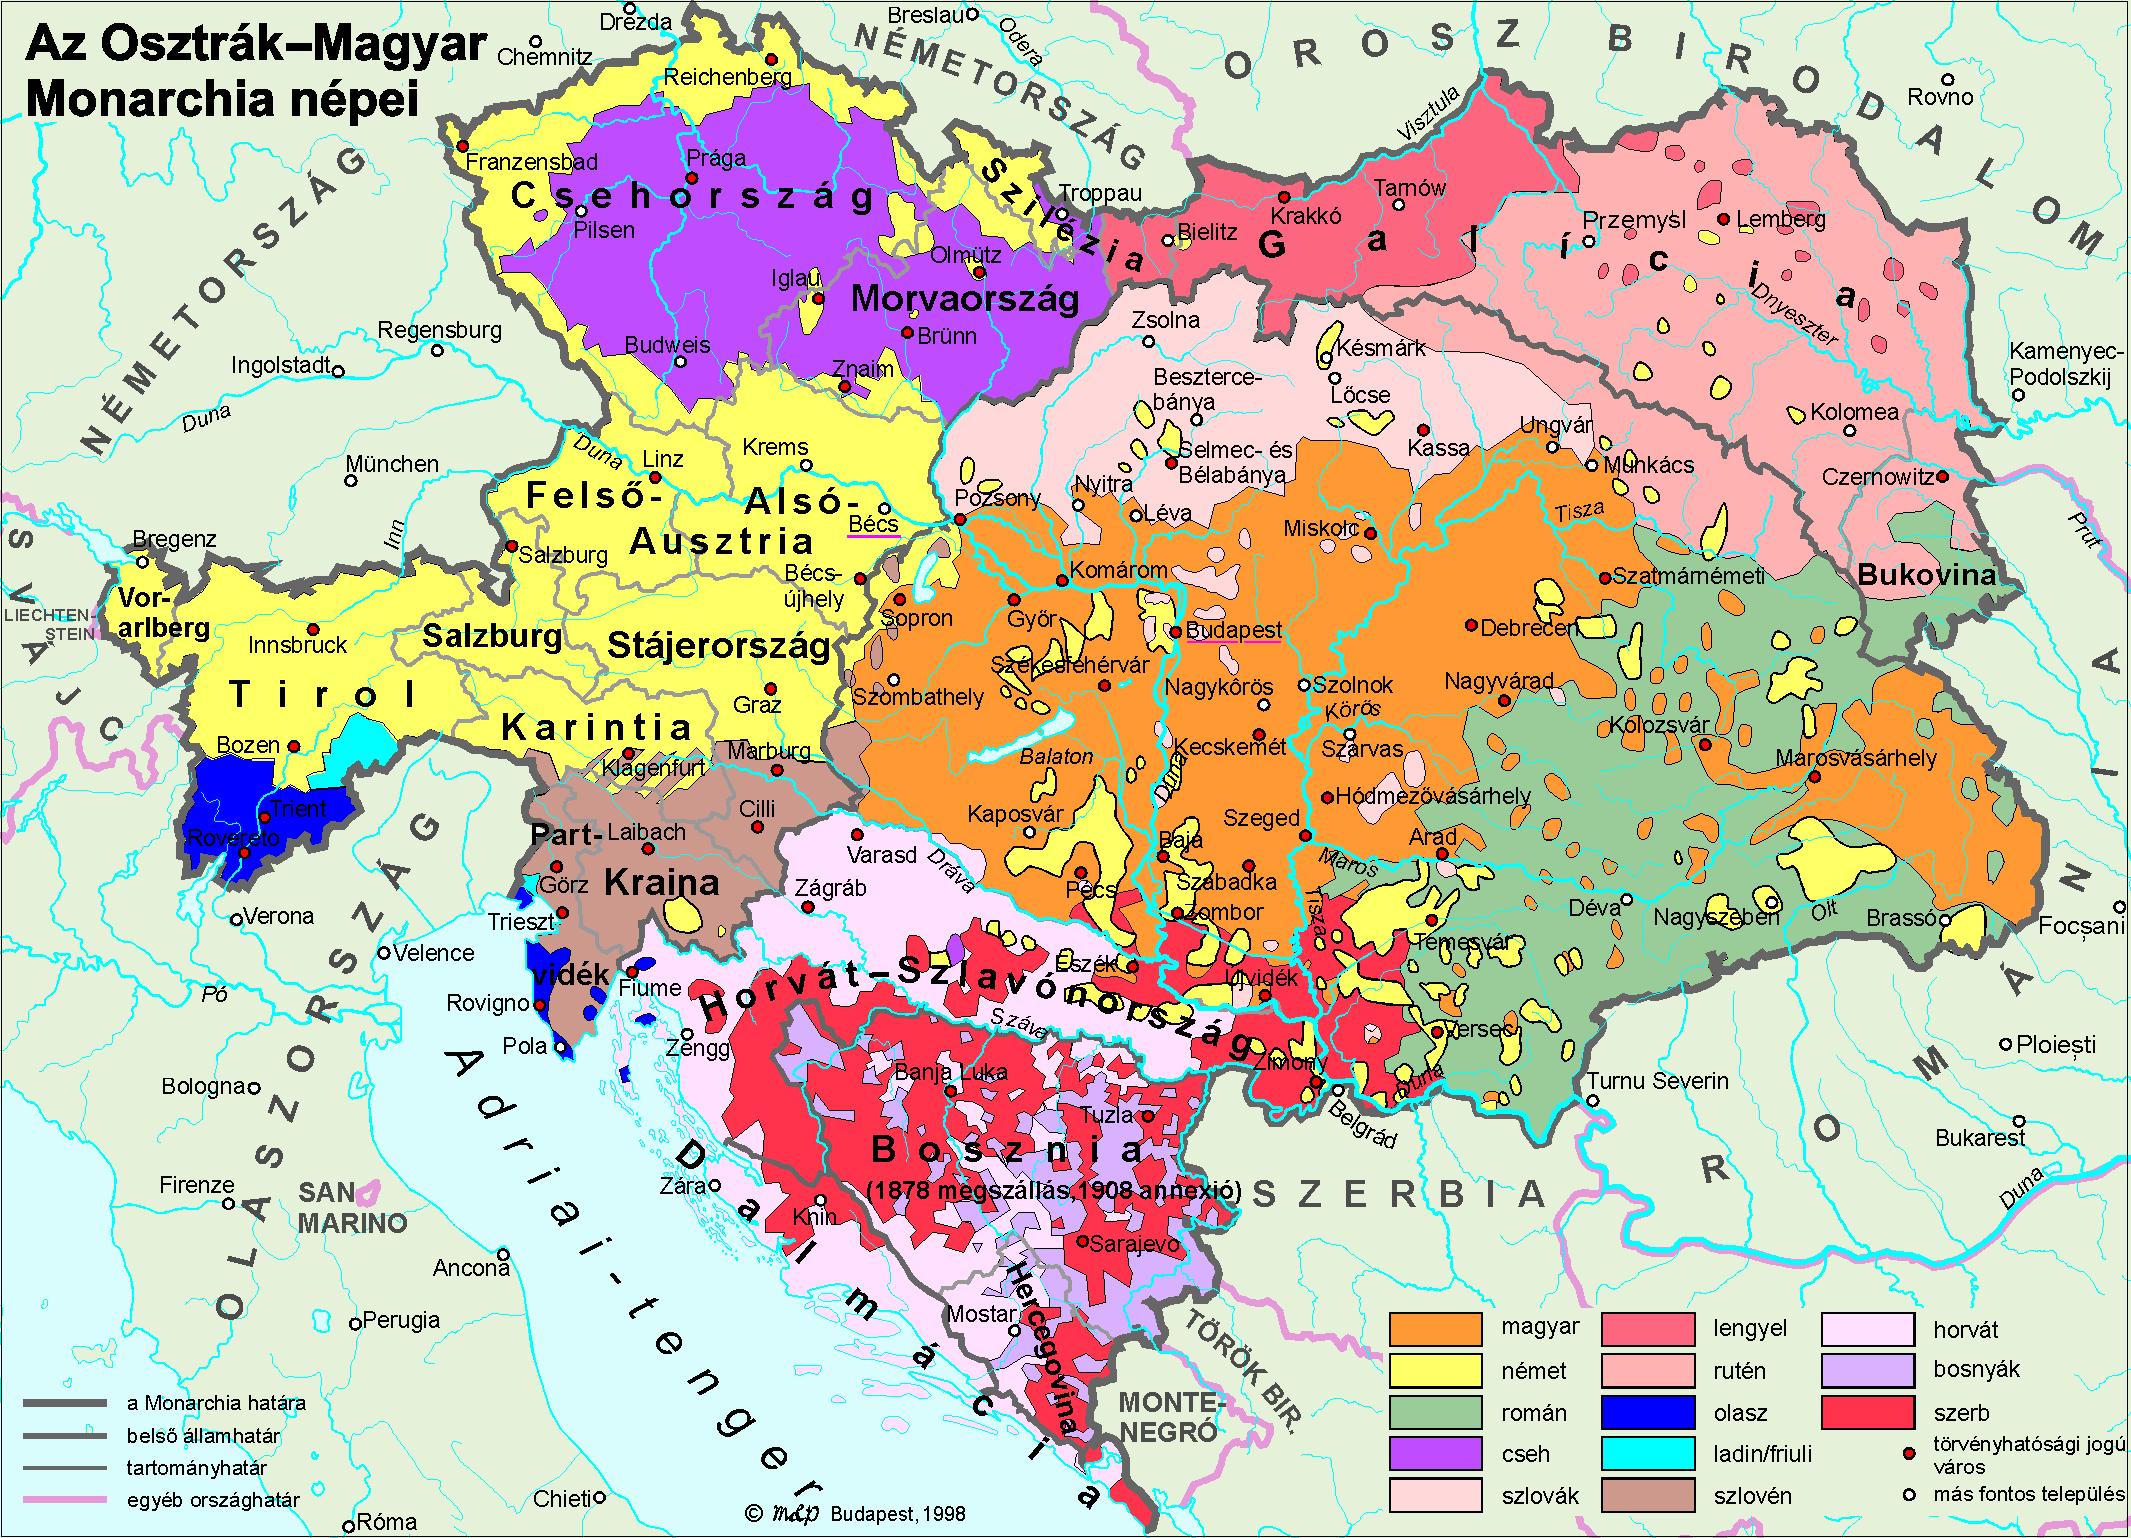 magyarország nemzetiségei térkép Magyarország nemzetiségei. Rövid történeti áttekintés  magyarország nemzetiségei térkép